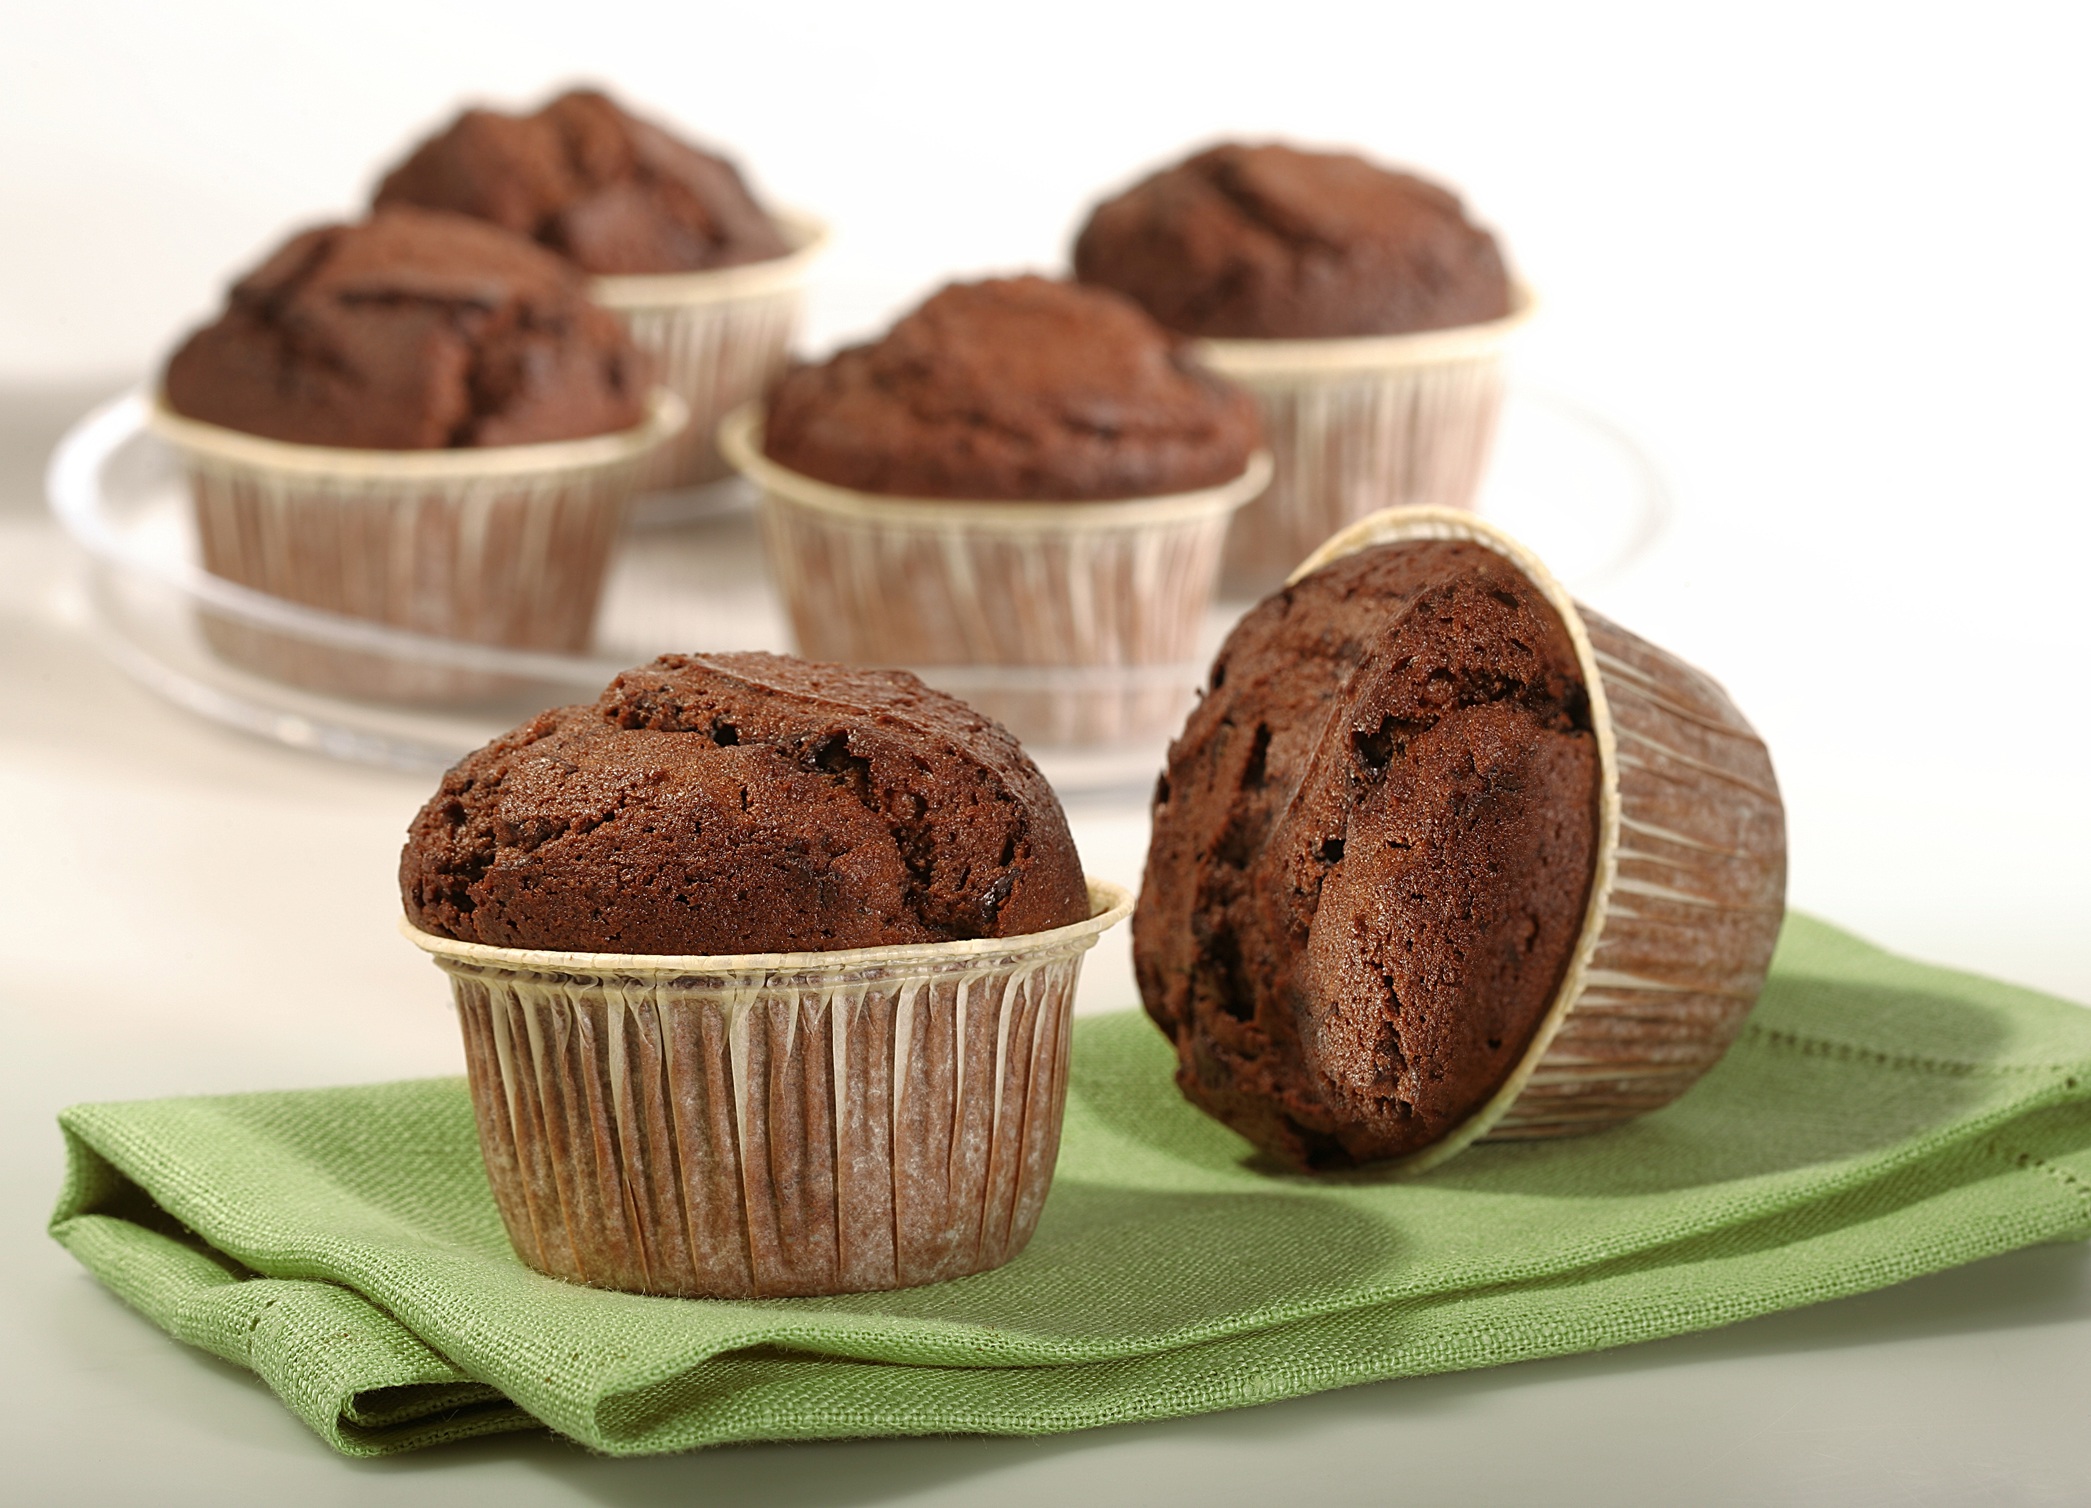 Συνταγή της ημέρας:”Muffins σοκολάτας”με την διατροφική ανάλυση του Δημήτρη Γρηγοράκη